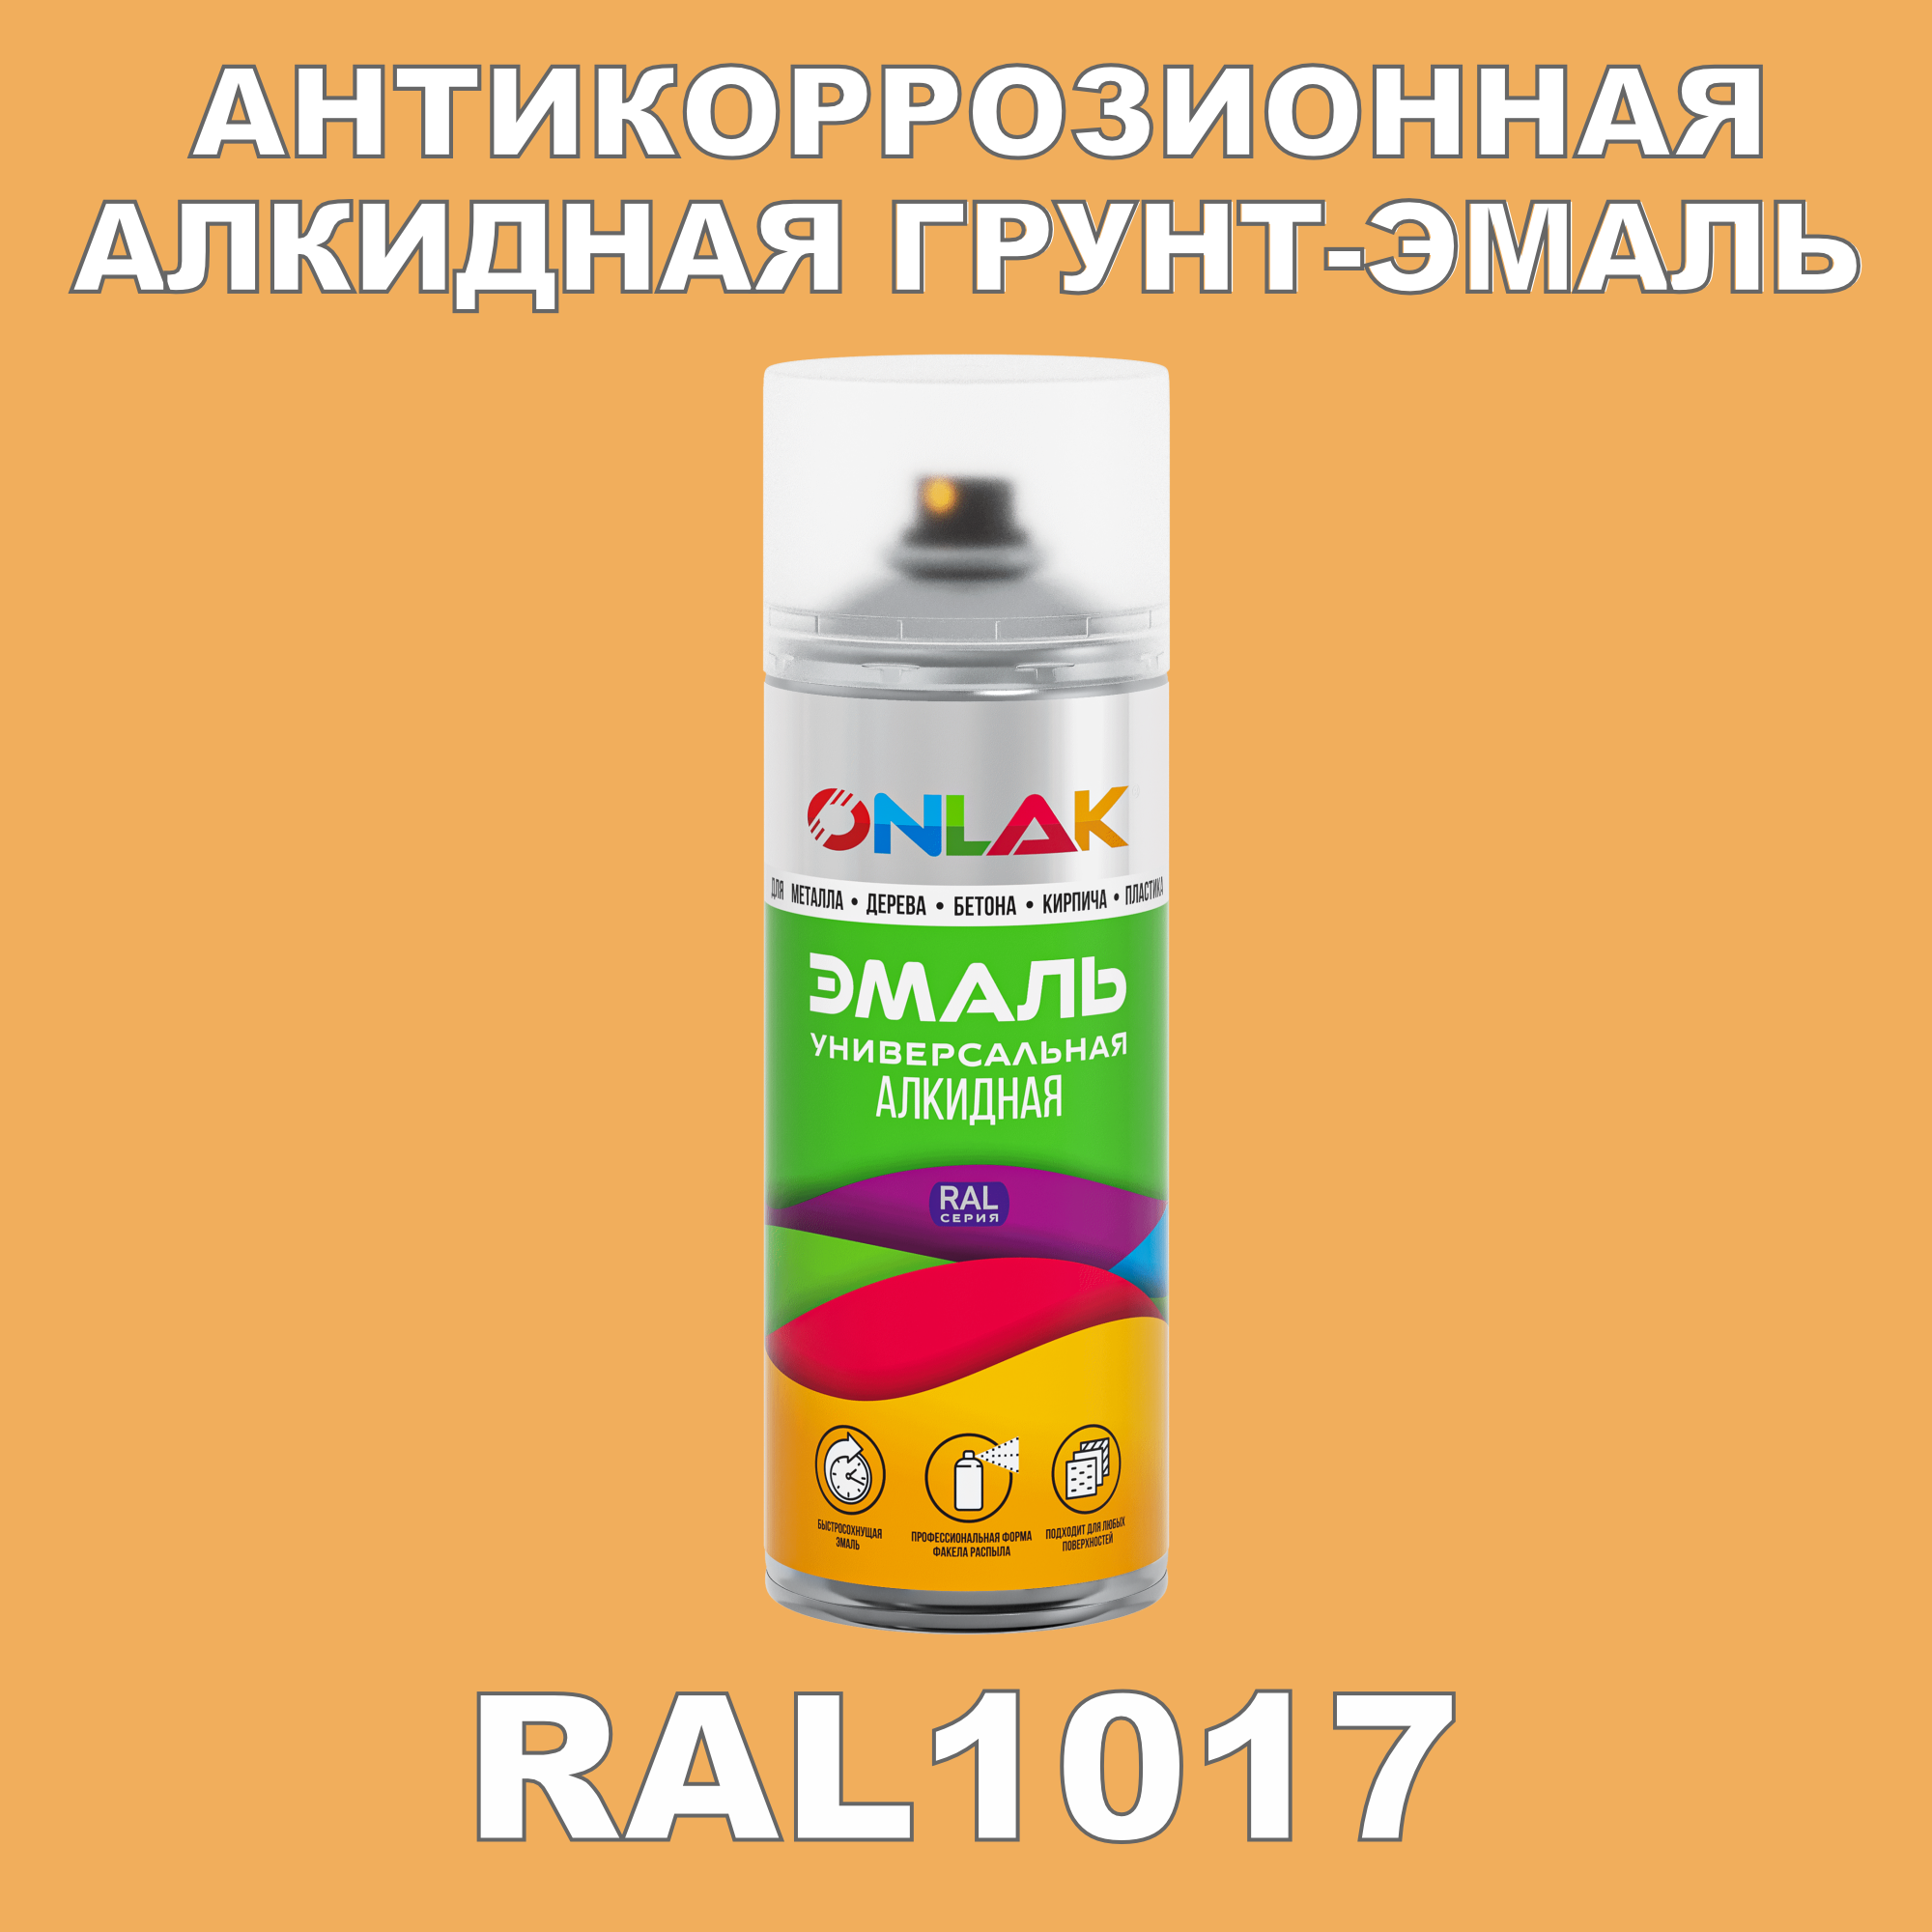 Антикоррозионная грунт-эмаль ONLAK RAL1017 полуматовая для металла и защиты от ржавчины